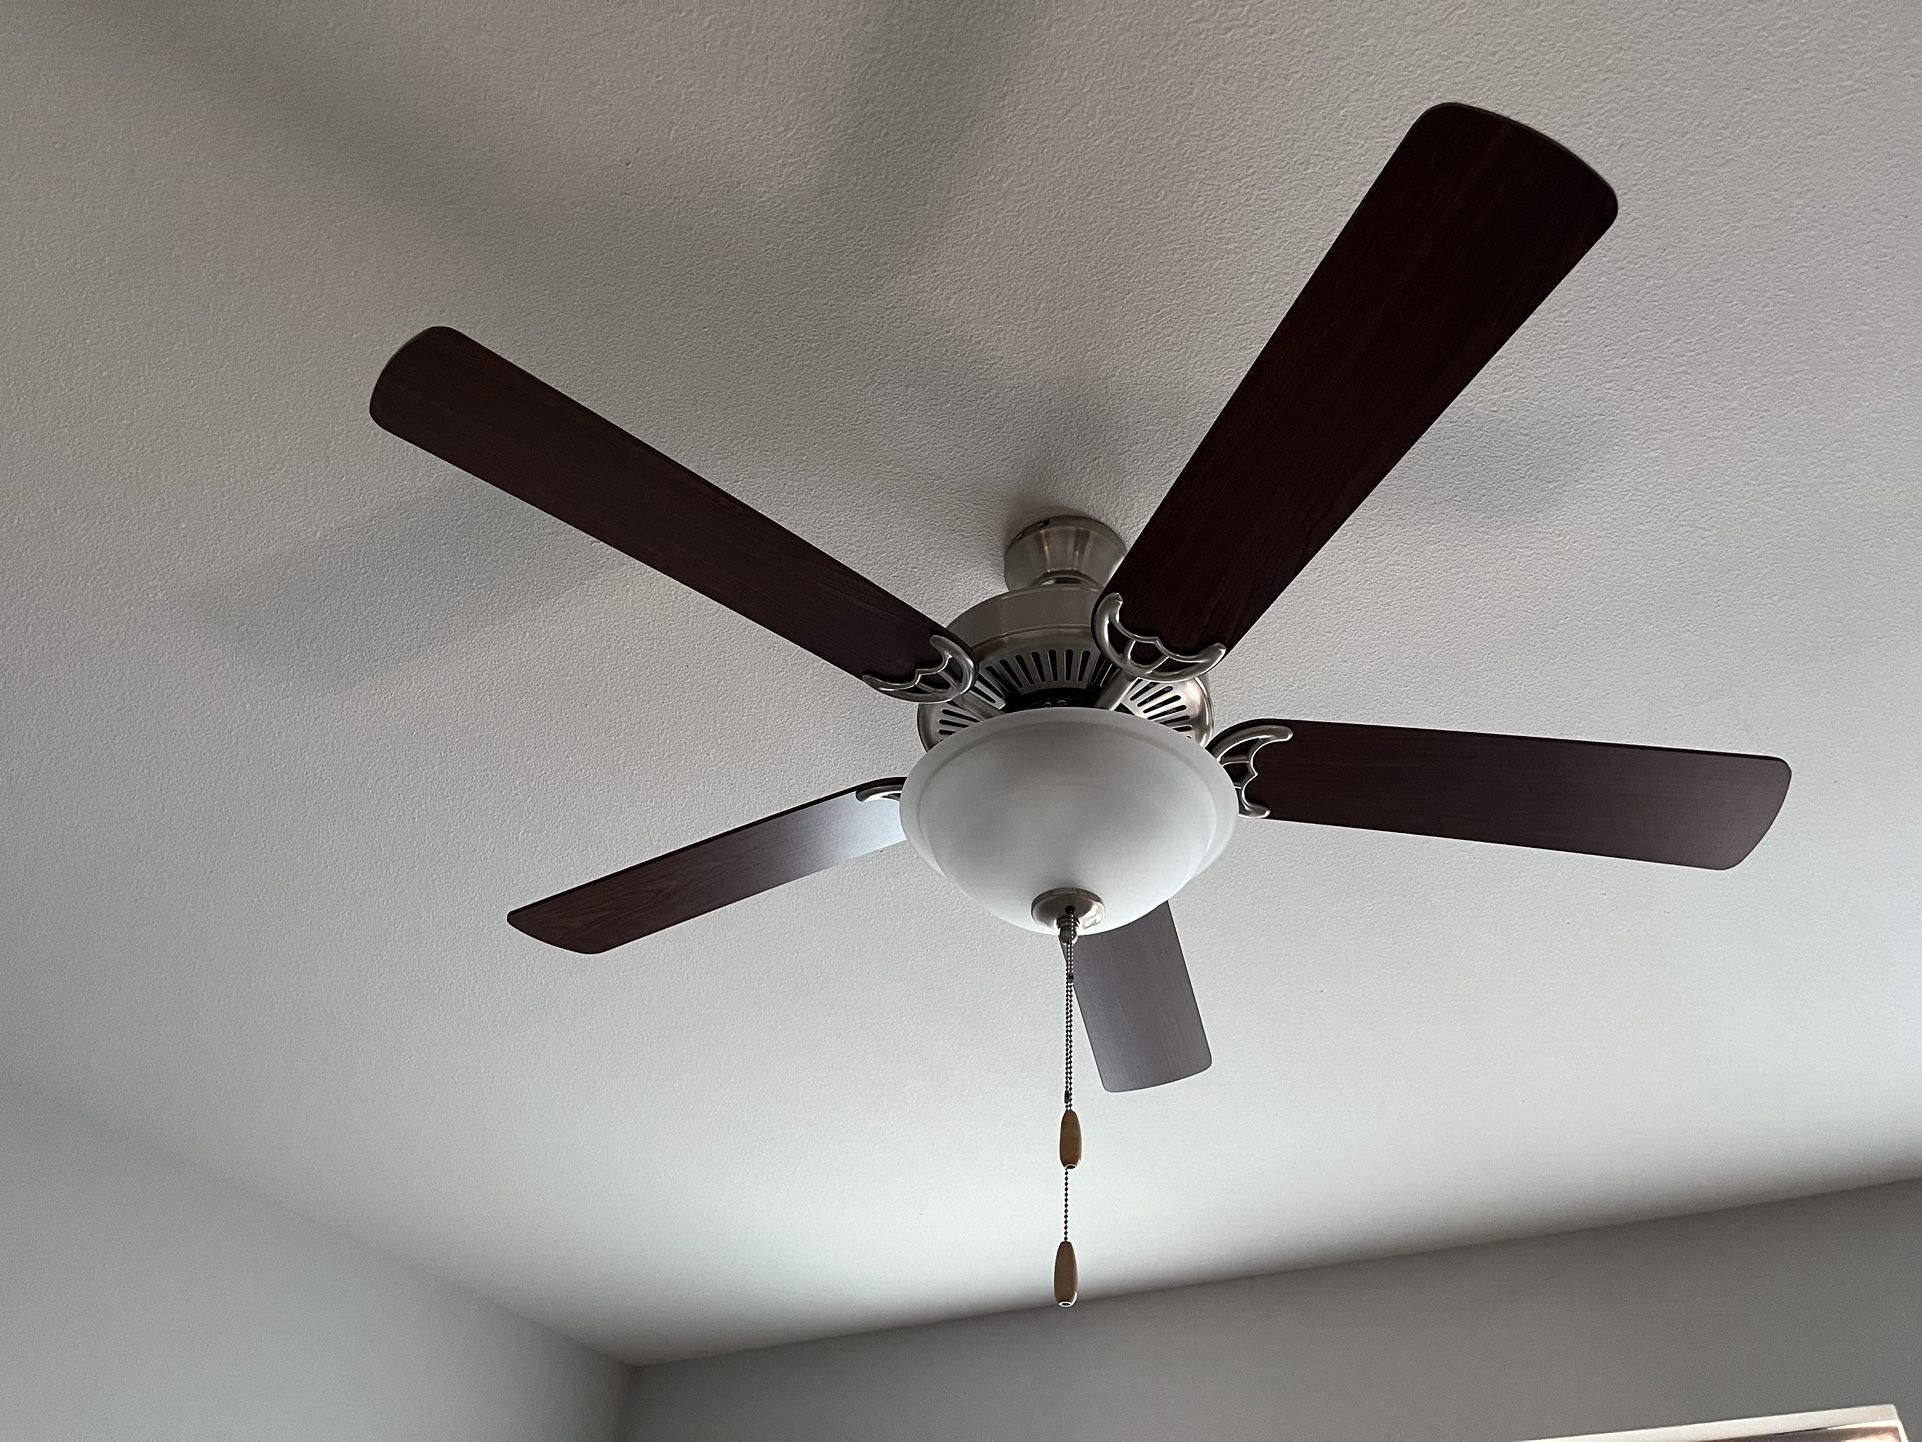 Ceiling Fan/light